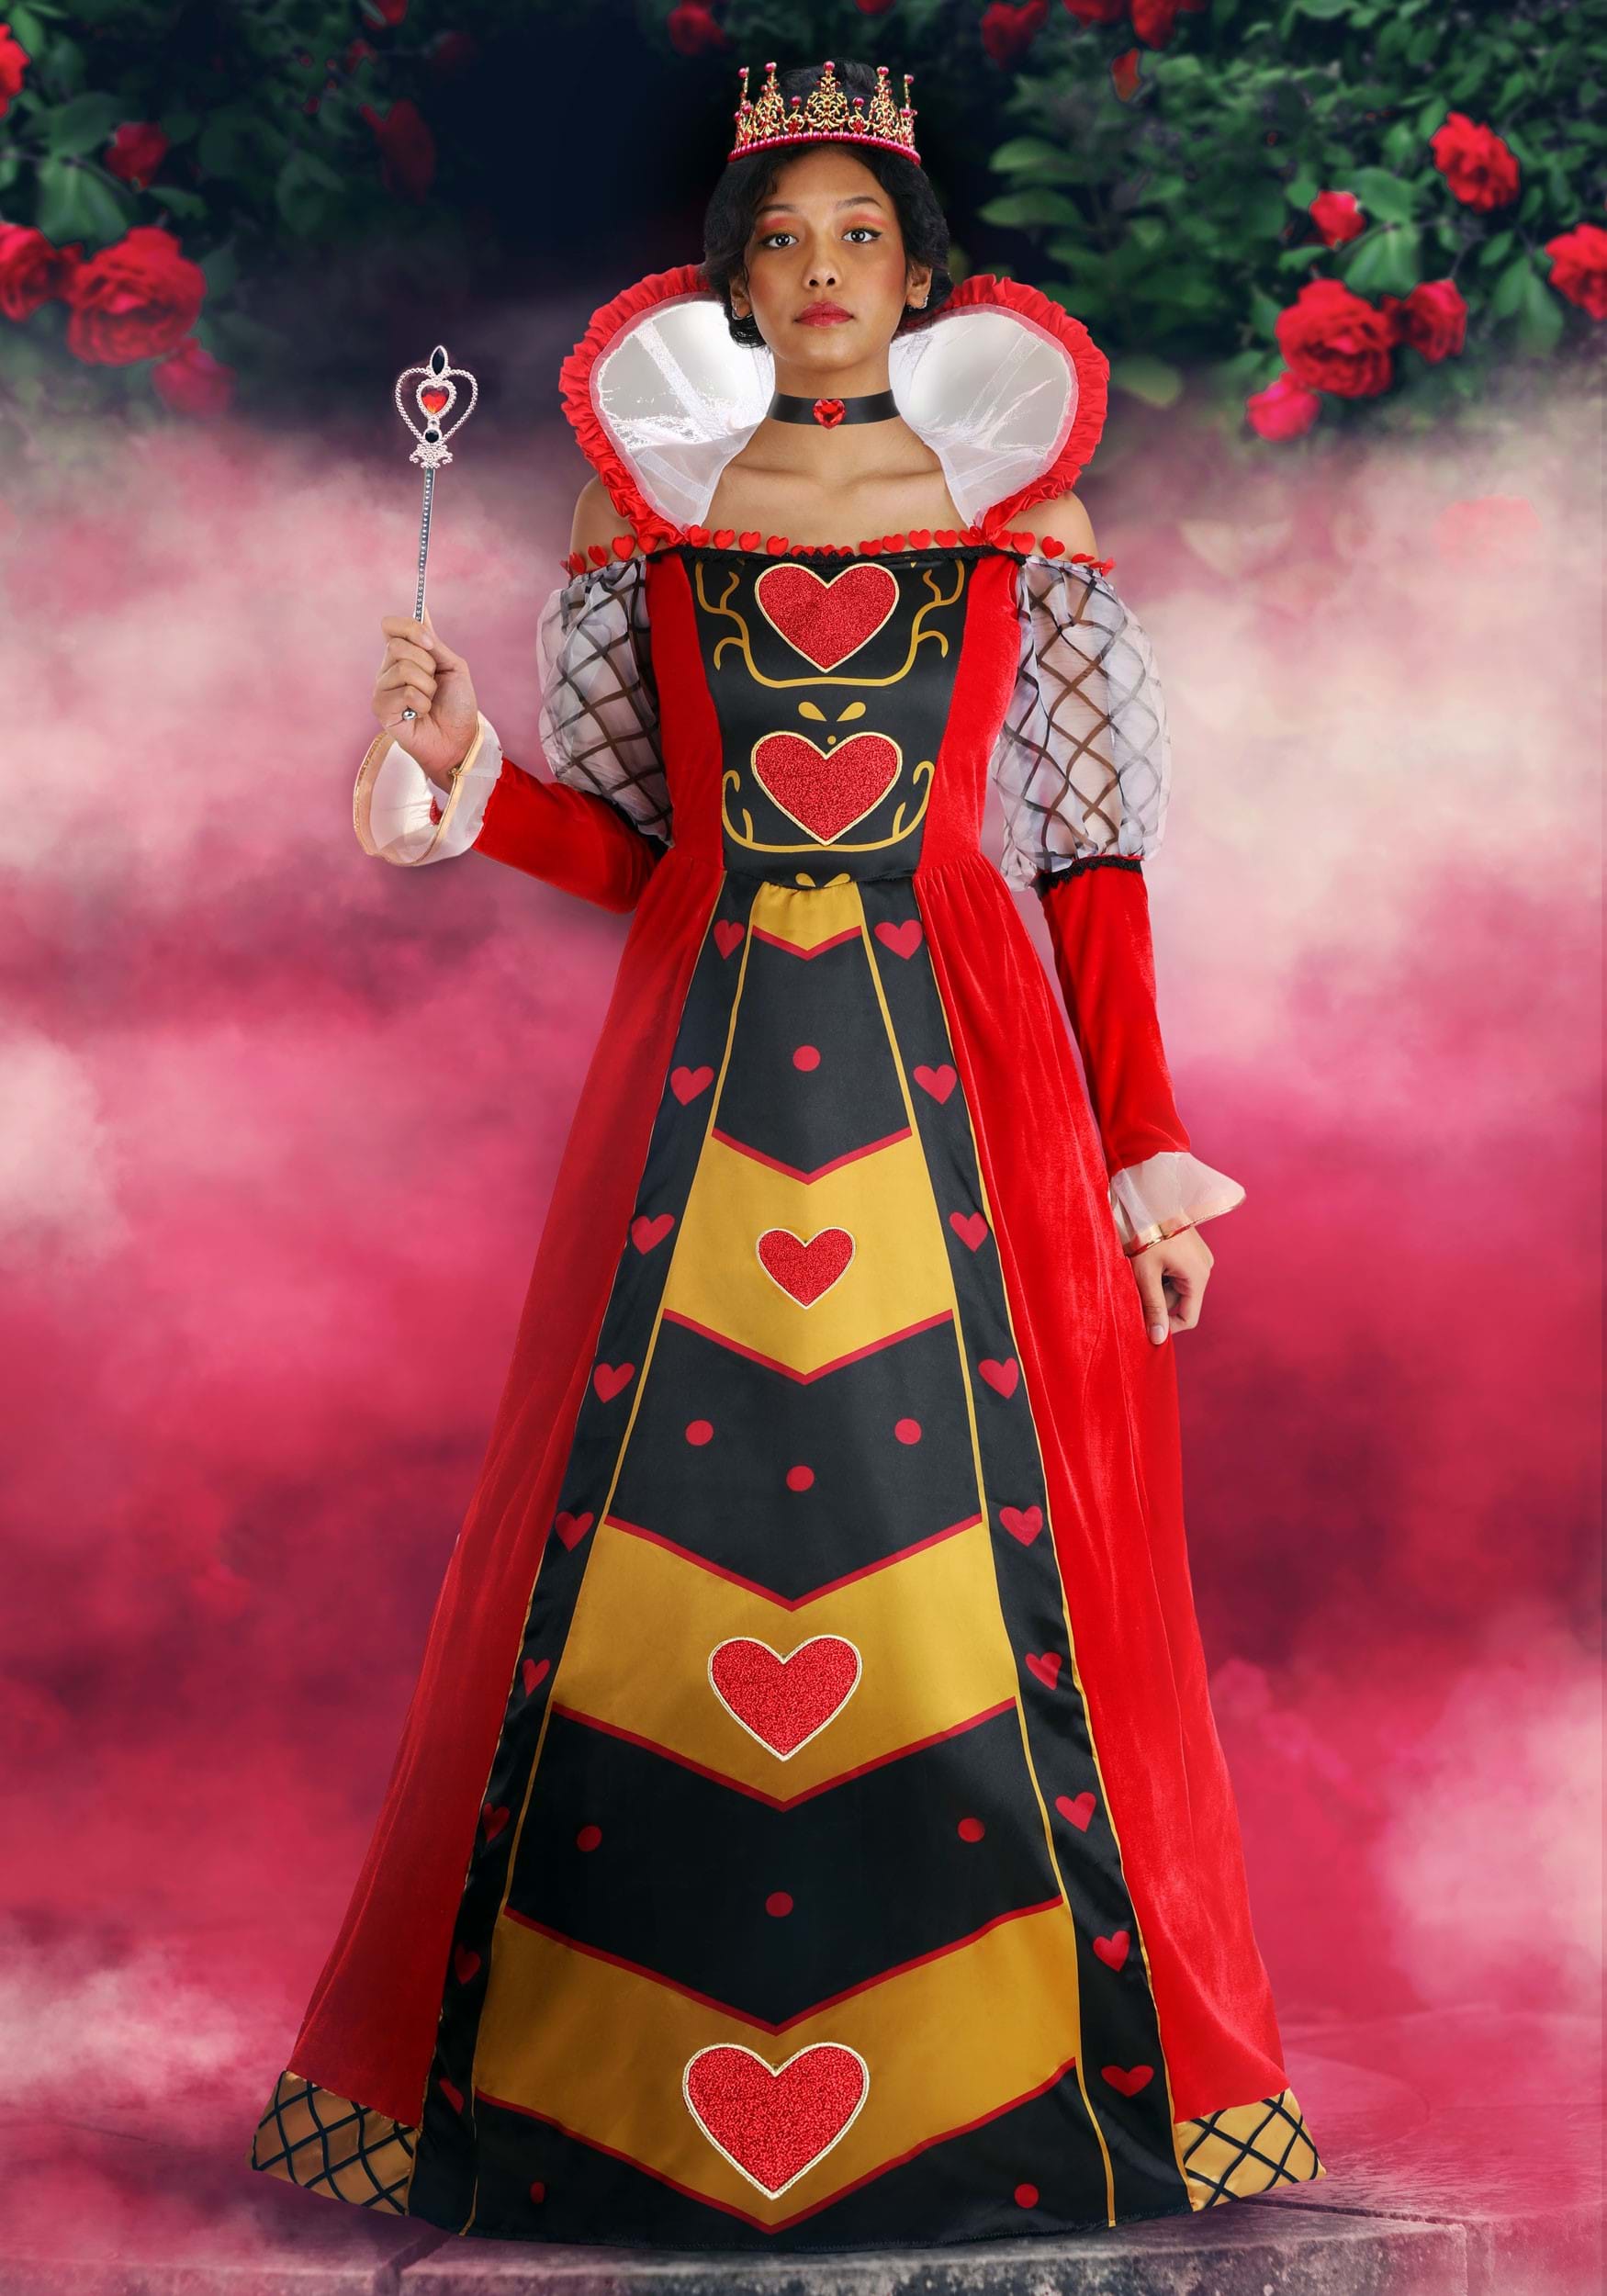 Queen of Hearts Costumes